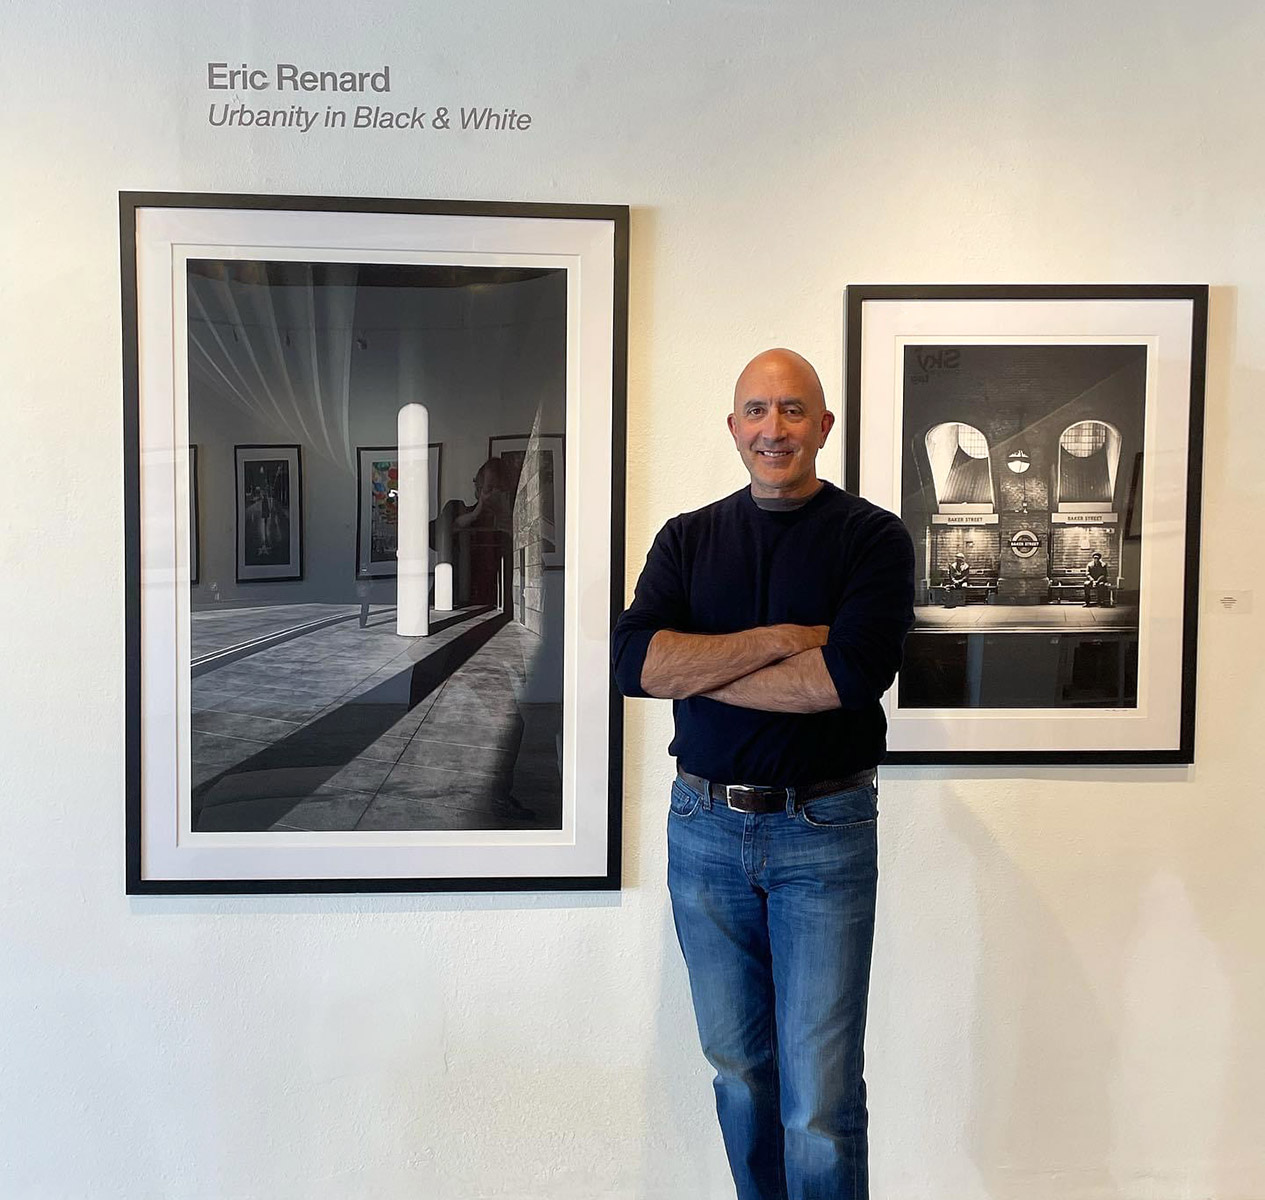 Eric Renard at Urbanity in Black & White